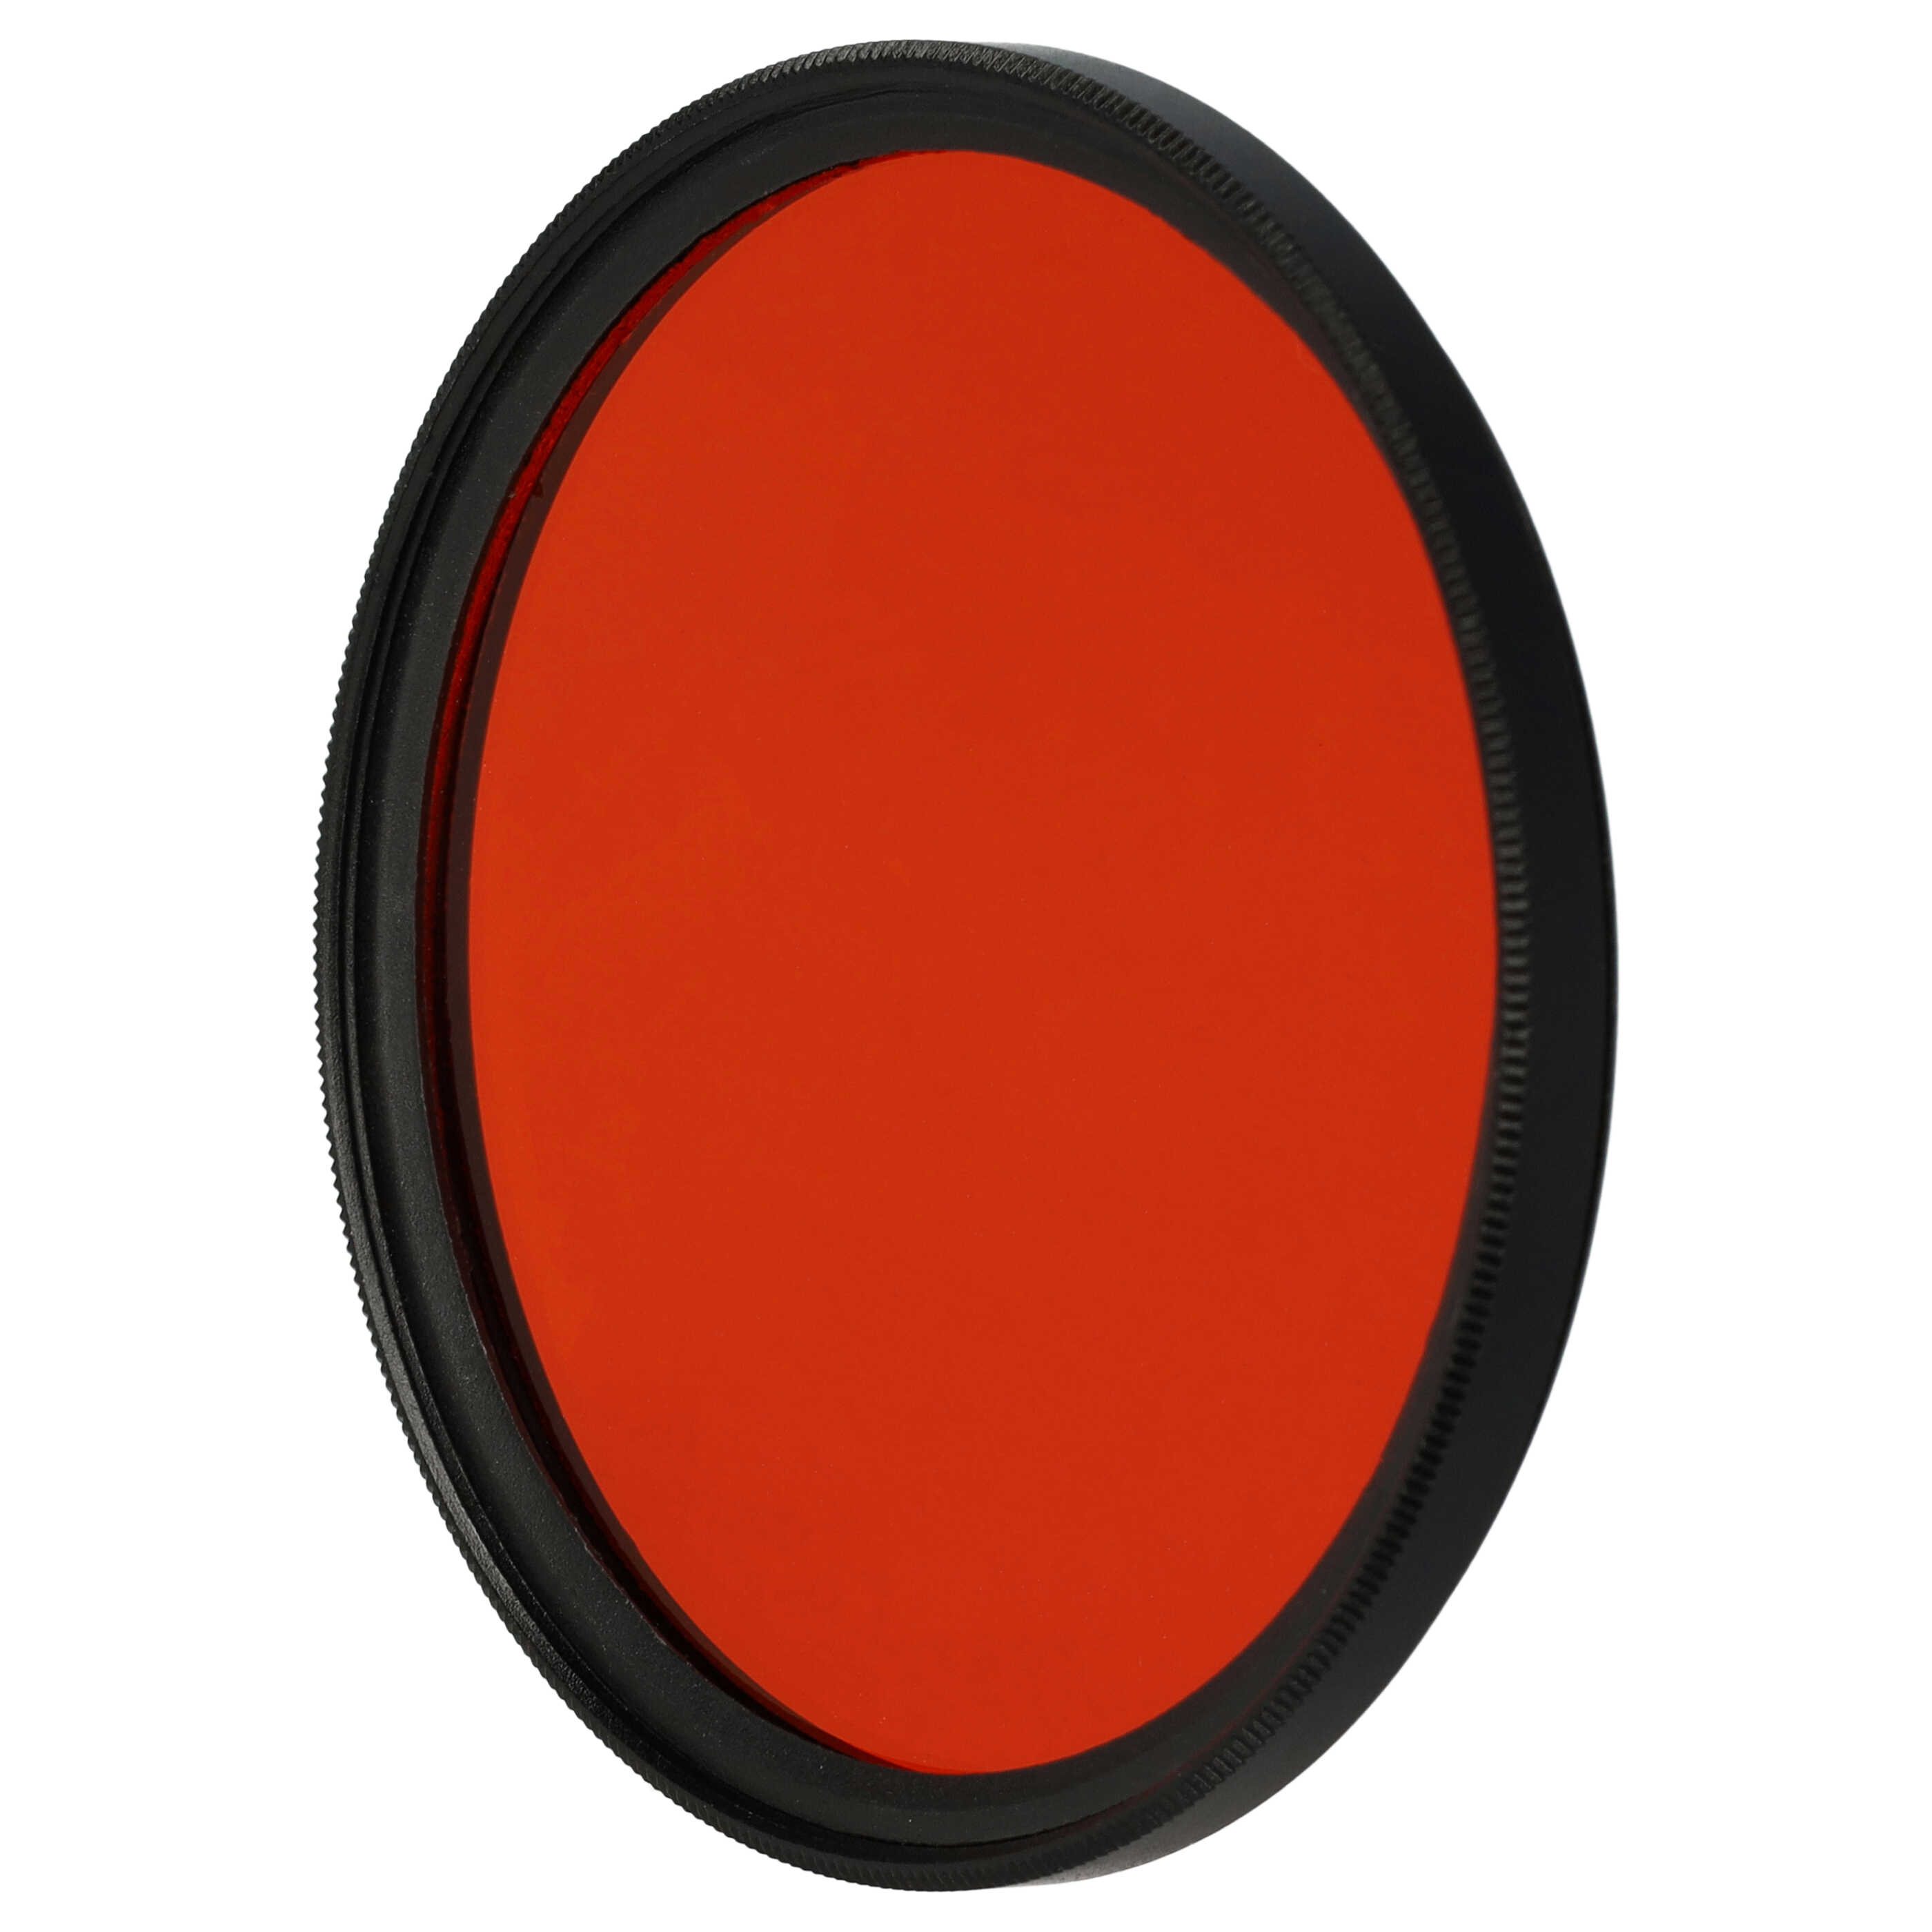 Filtre de couleur orange pour objectifs d'appareils photo de 62 mm - Filtre orange